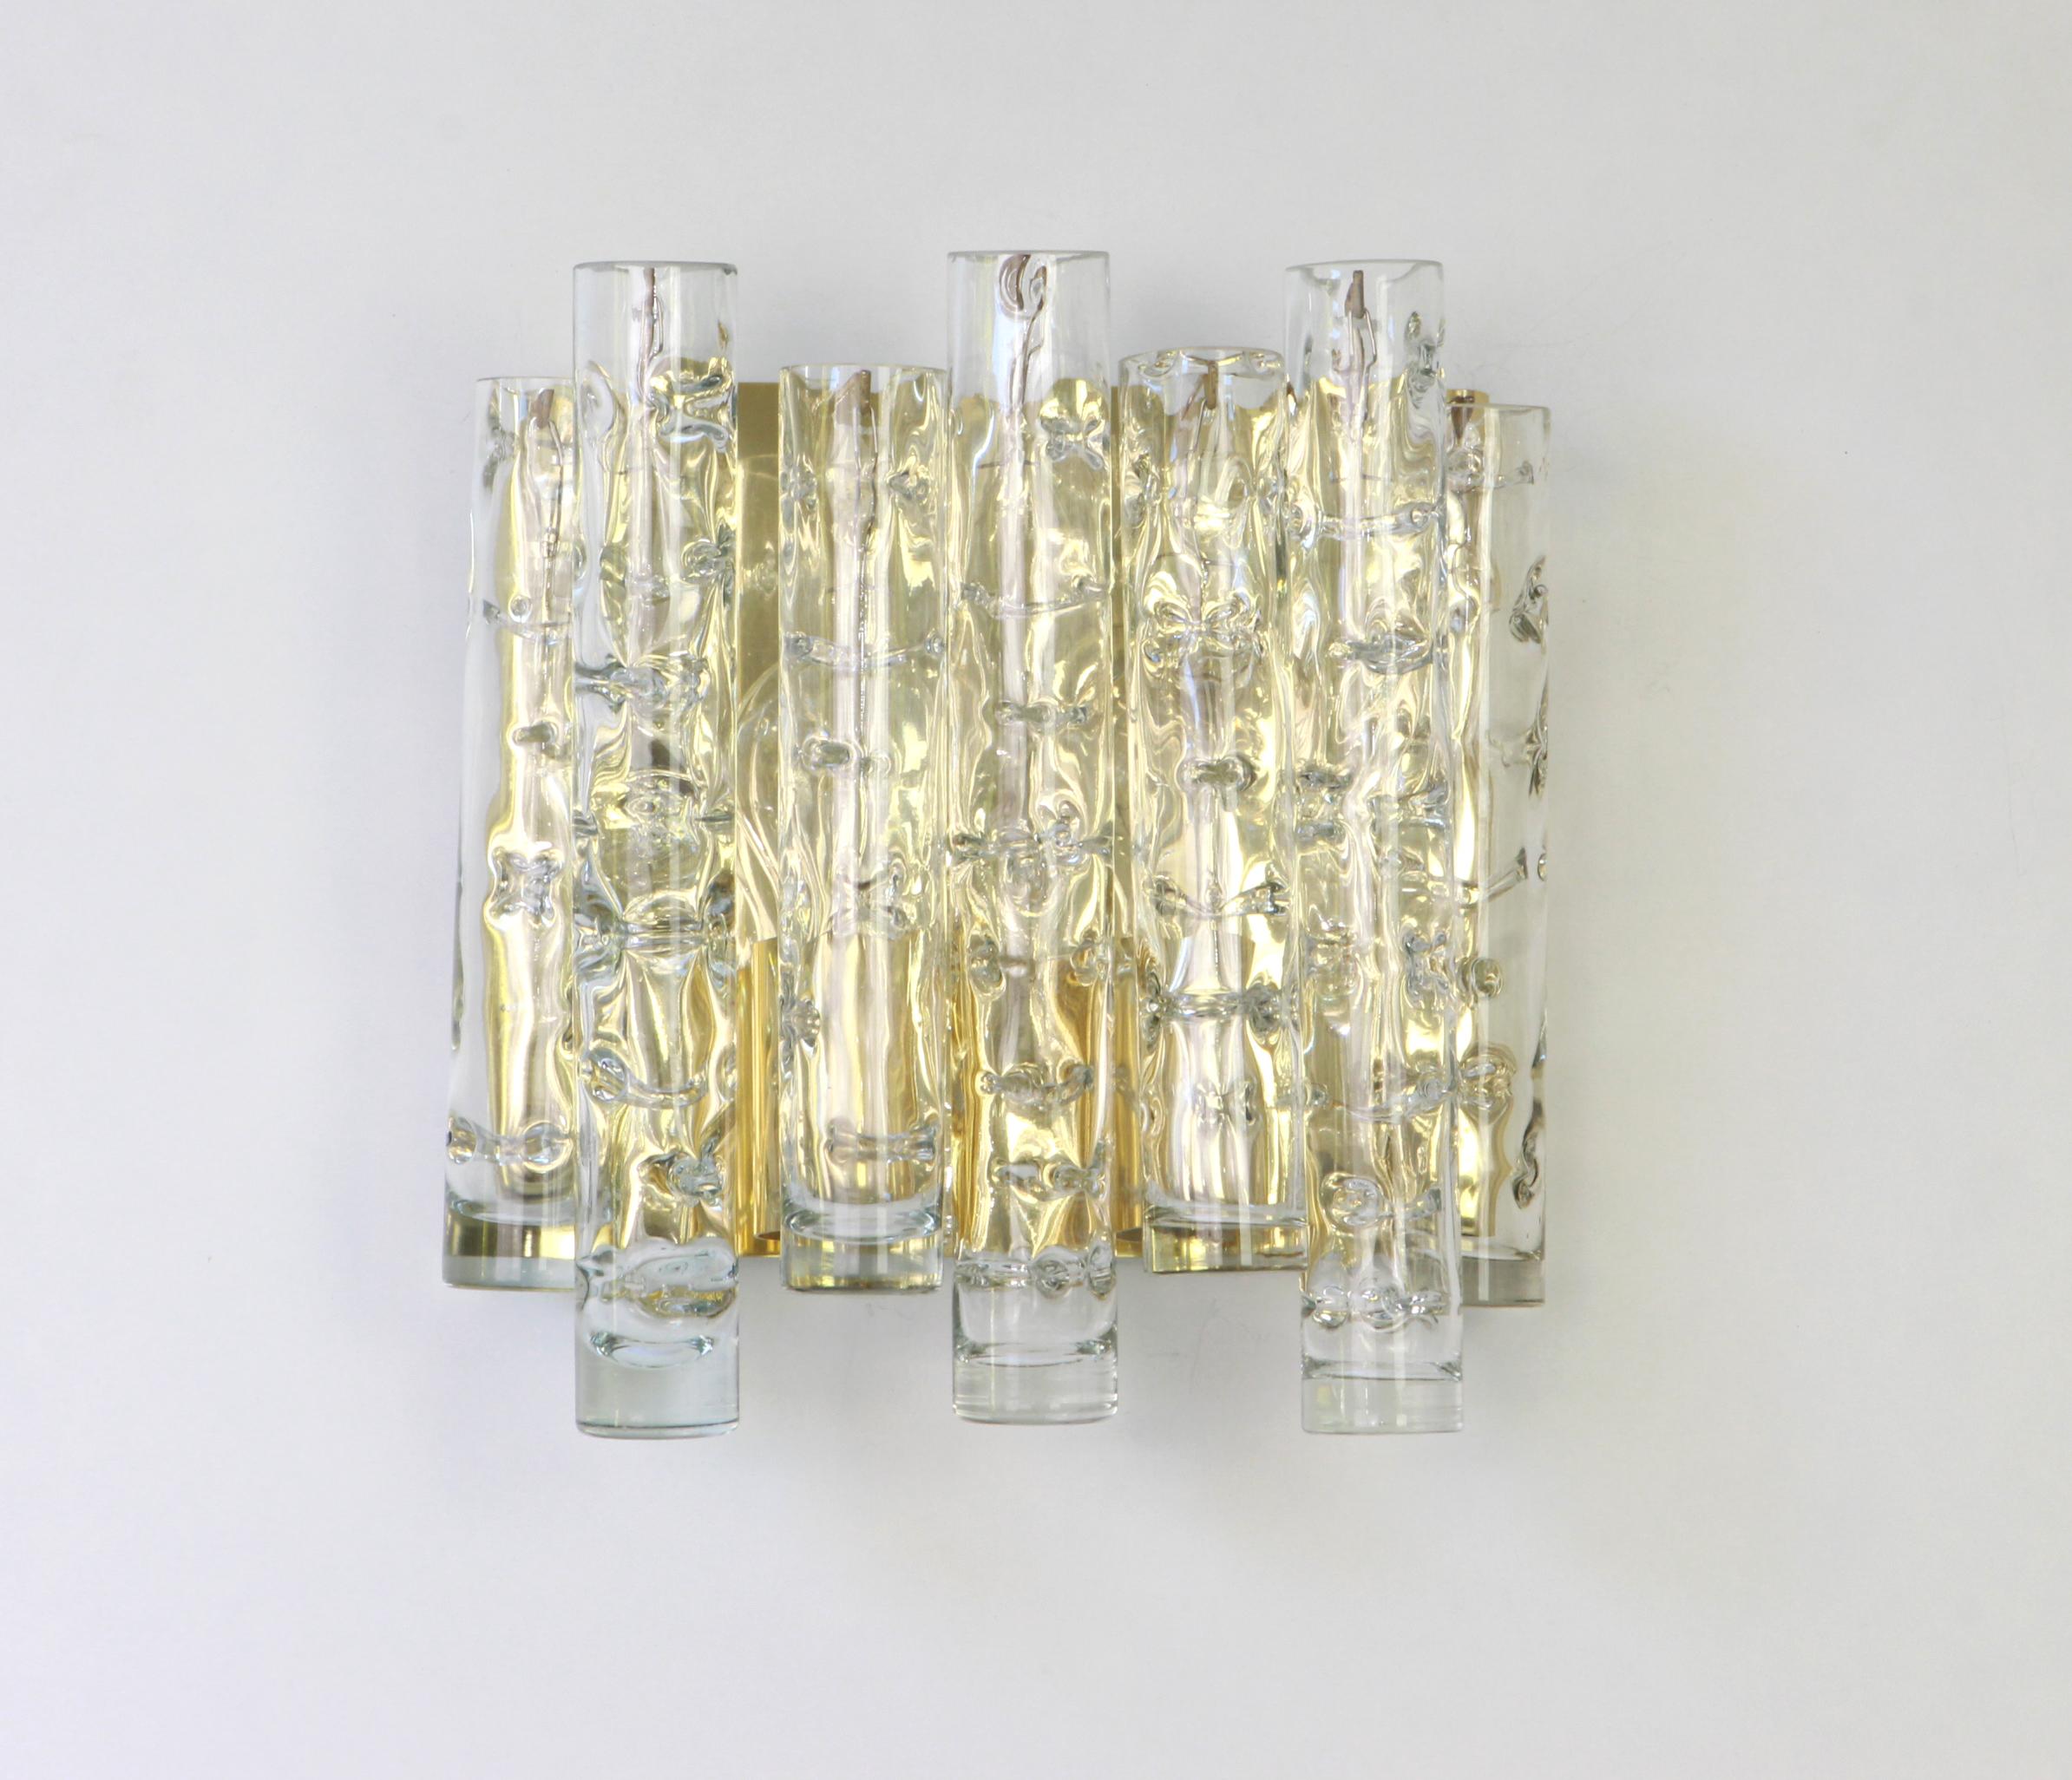 Wunderschönes Paar Wandleuchten aus der Mitte des Jahrhunderts mit Murano-Glasröhren, hergestellt von Doria Leuchten, Deutschland, ca. 1960-1969.


Hochwertig und in sehr gutem Zustand. Gereinigt, gut verkabelt und einsatzbereit. 

Jede Leuchte